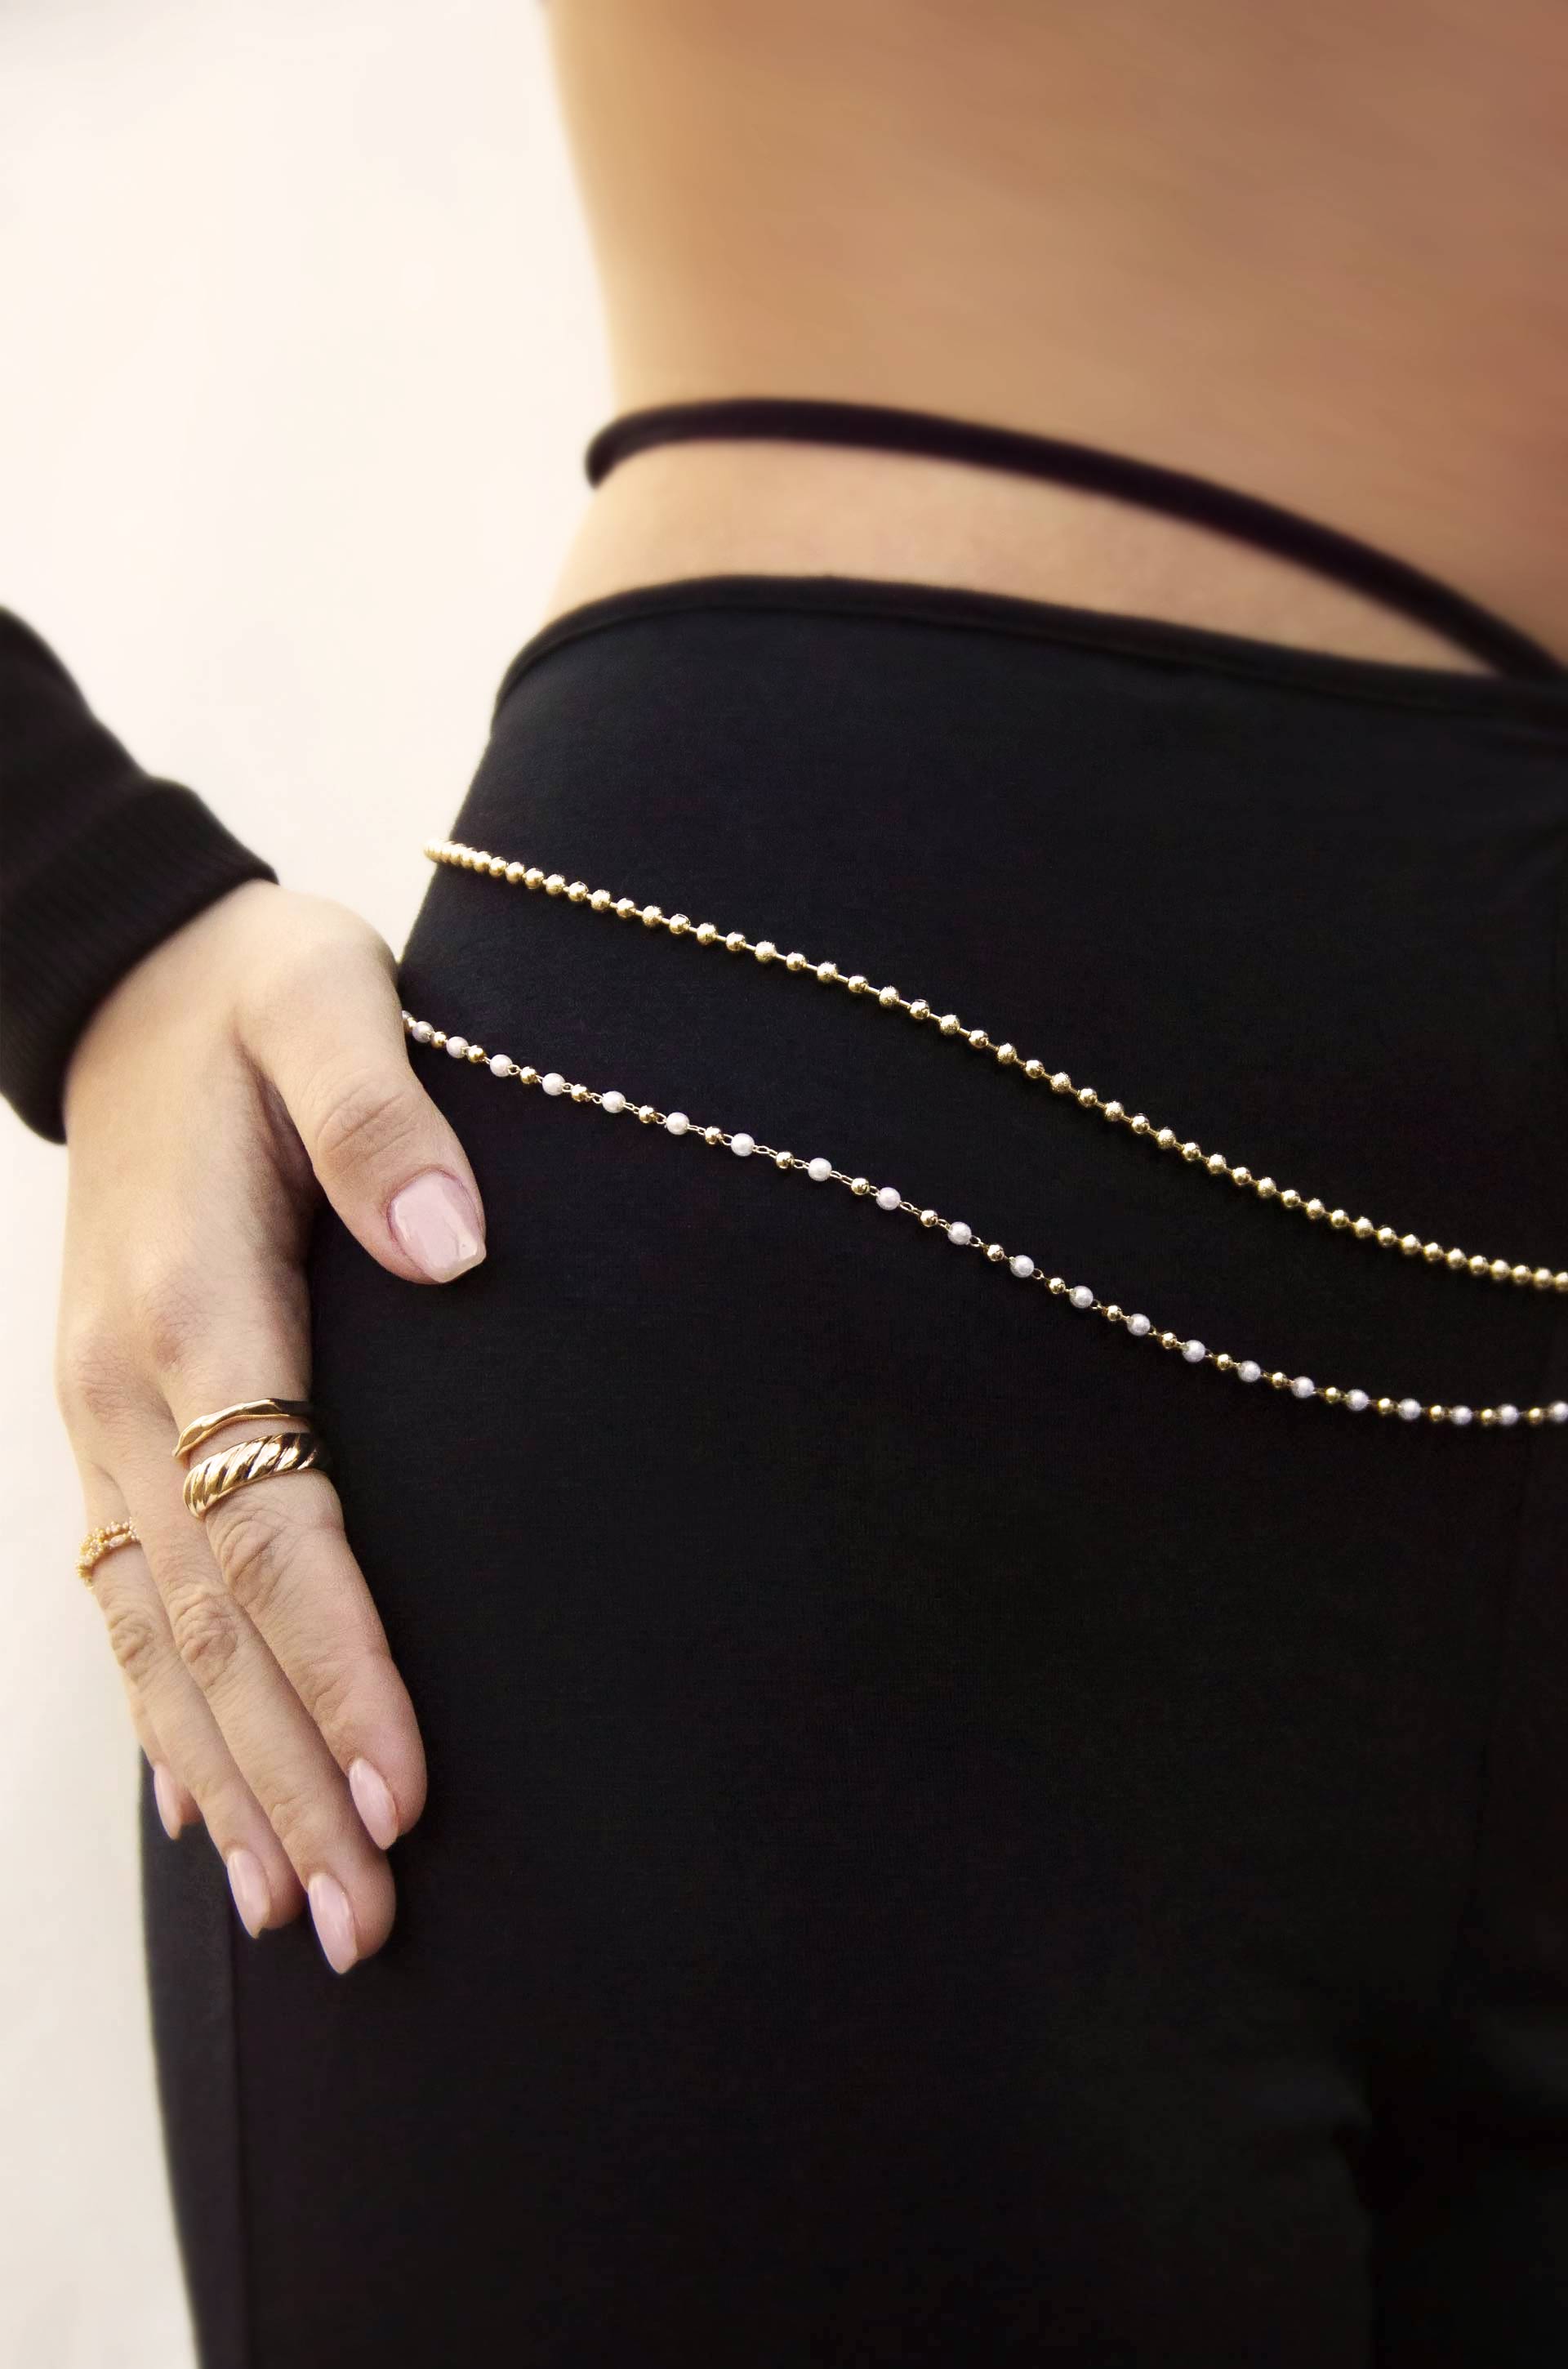 Body Chain – Women's Full Body Chain Jewelry – Ettika